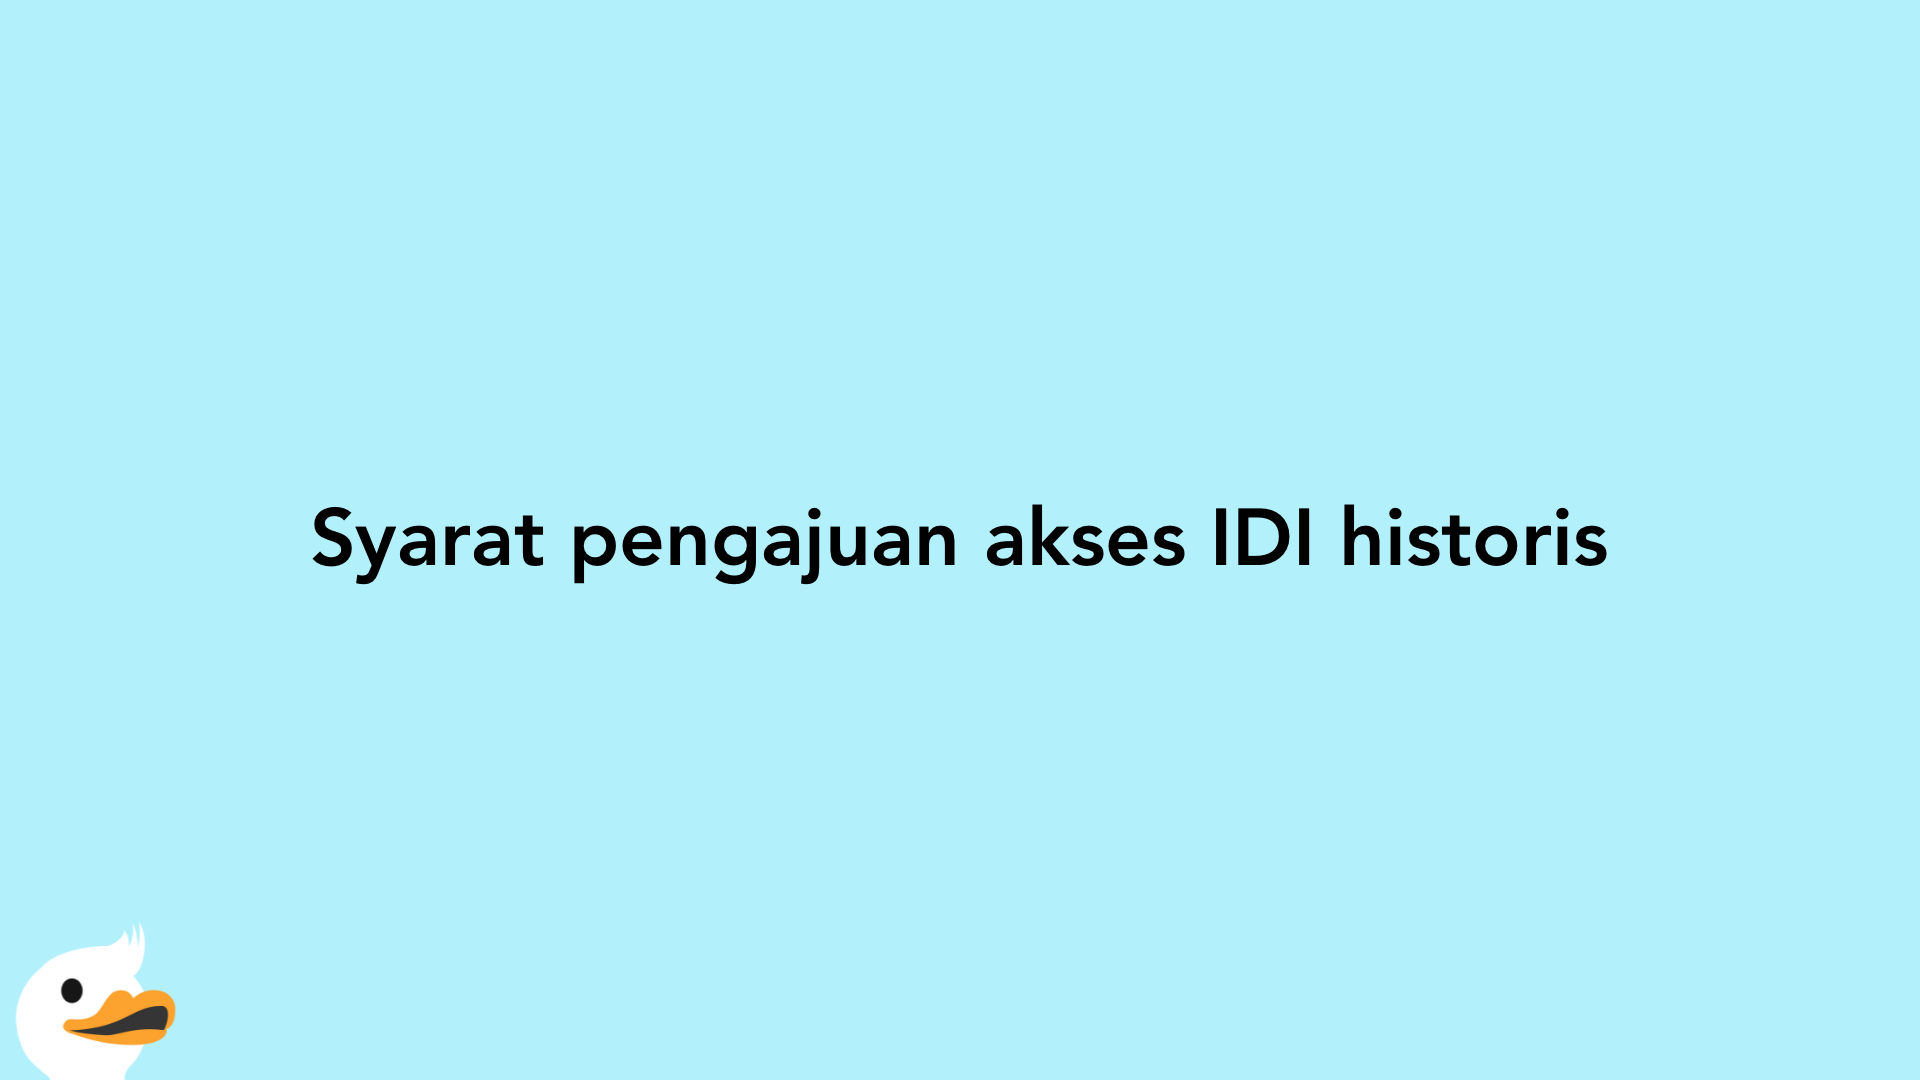 Syarat pengajuan akses IDI historis